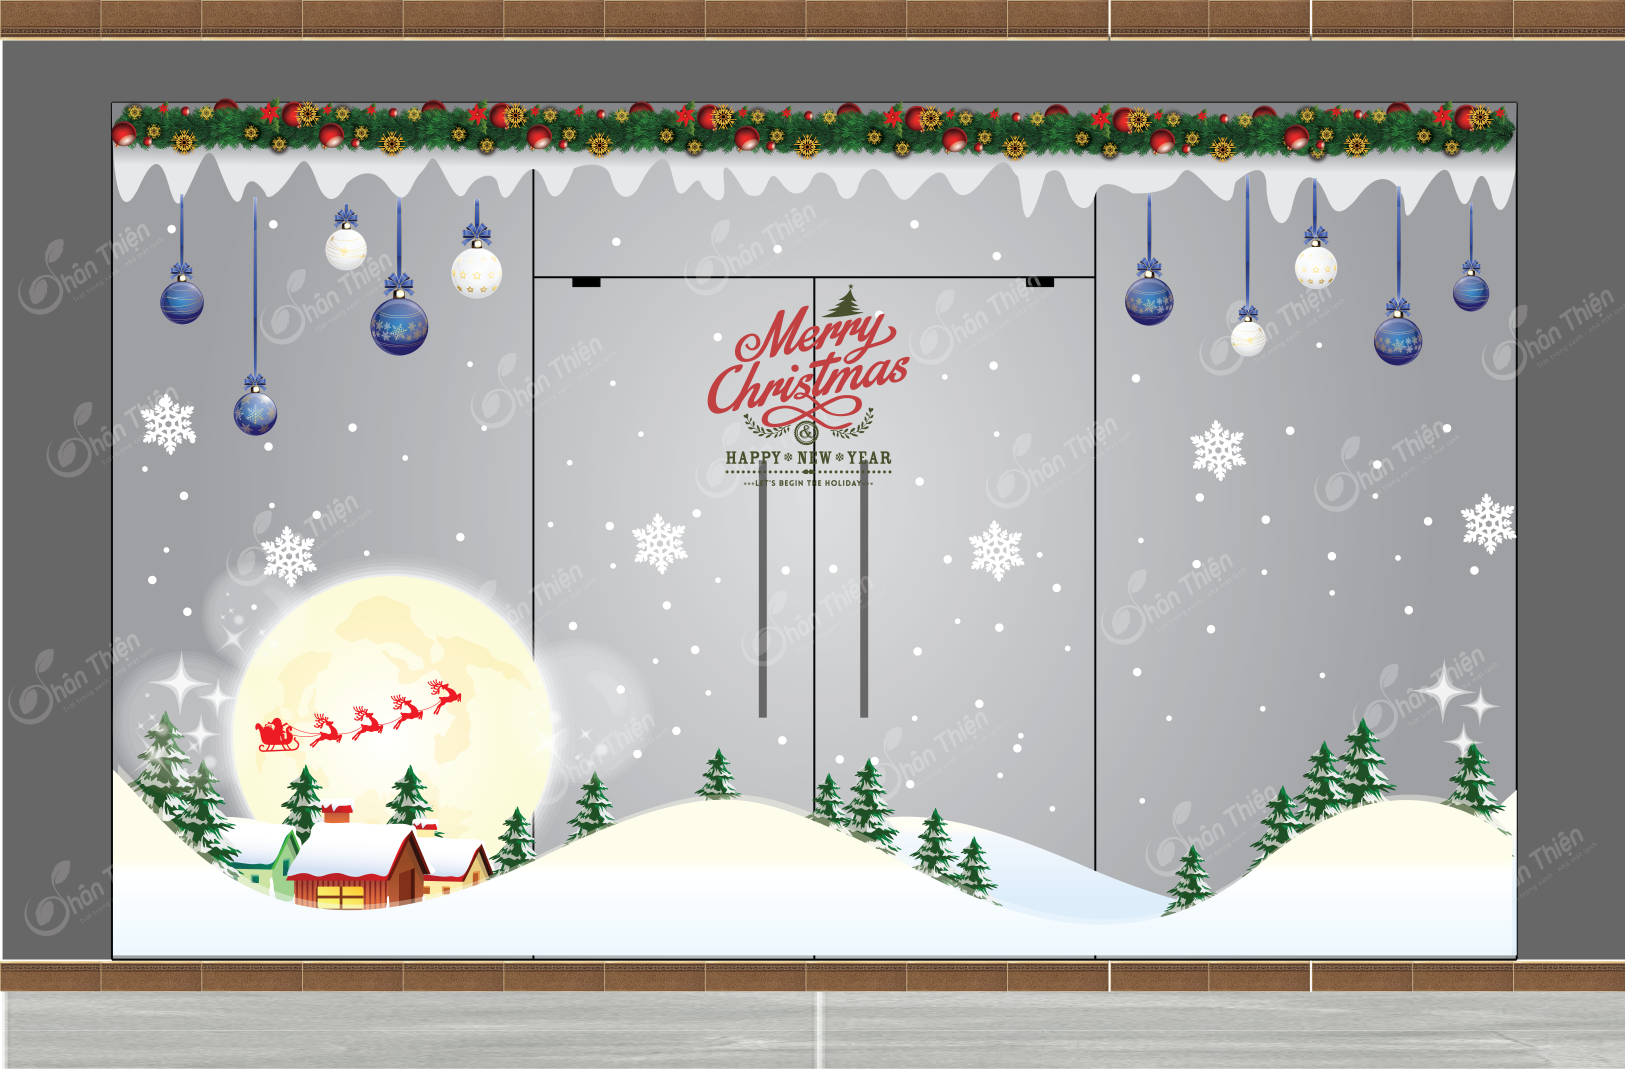 Mùa Noel 2024 sắp đến, hãy trang trí cửa hàng văn phòng của bạn để tạo niềm vui và thu hút khách hàng. Tại đây, chúng tôi cung cấp nhiều mẫu trang trí cửa hàng Noel mới nhất, giúp bạn làm mới không gian kinh doanh và gợi cảm hứng cho khách hàng đến thăm.